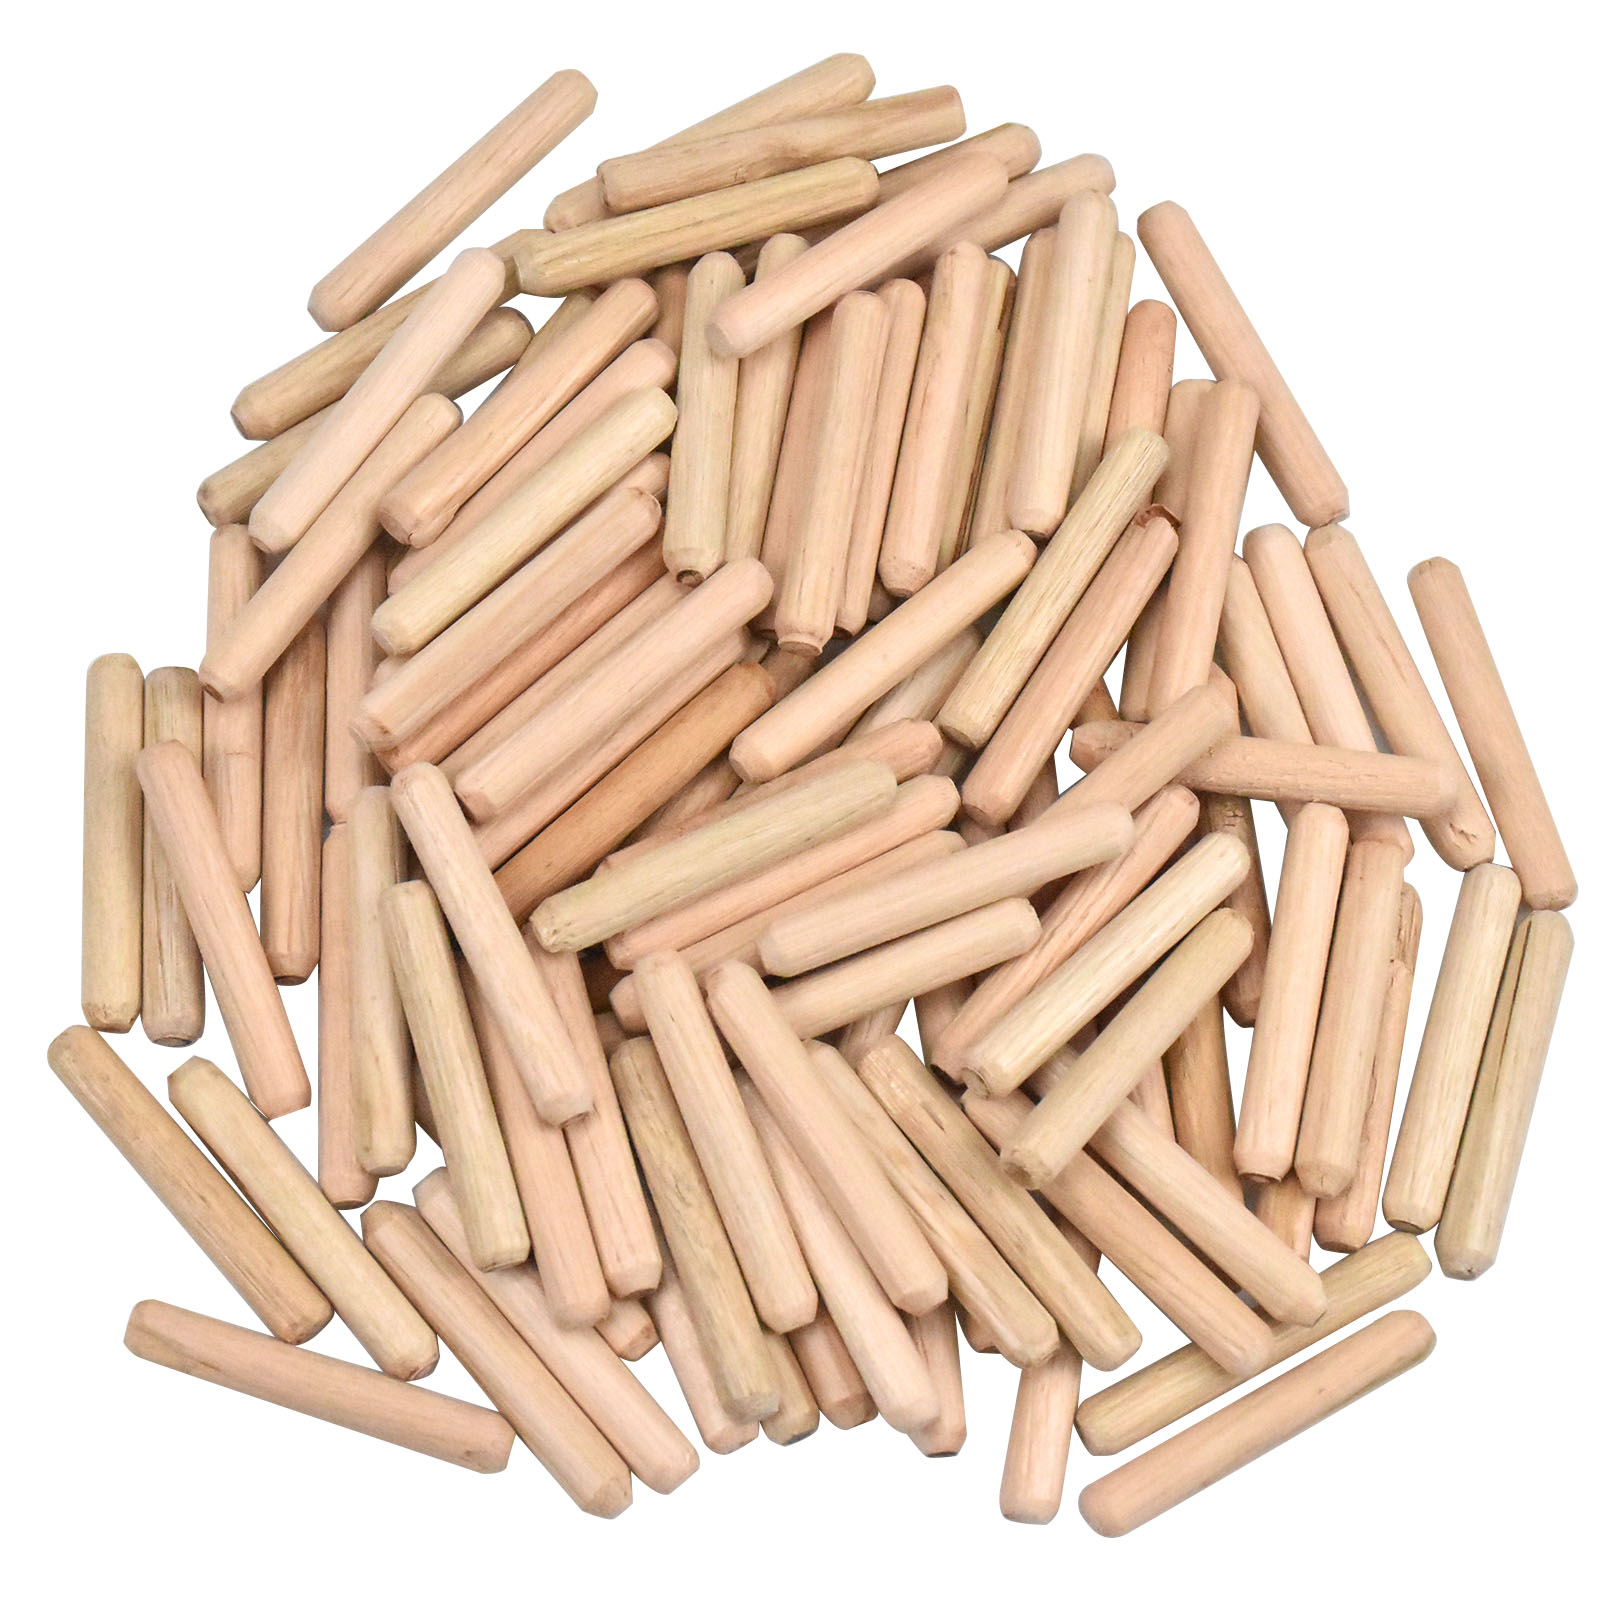  Tacos de madera, 100 unids/set de pasadores de madera